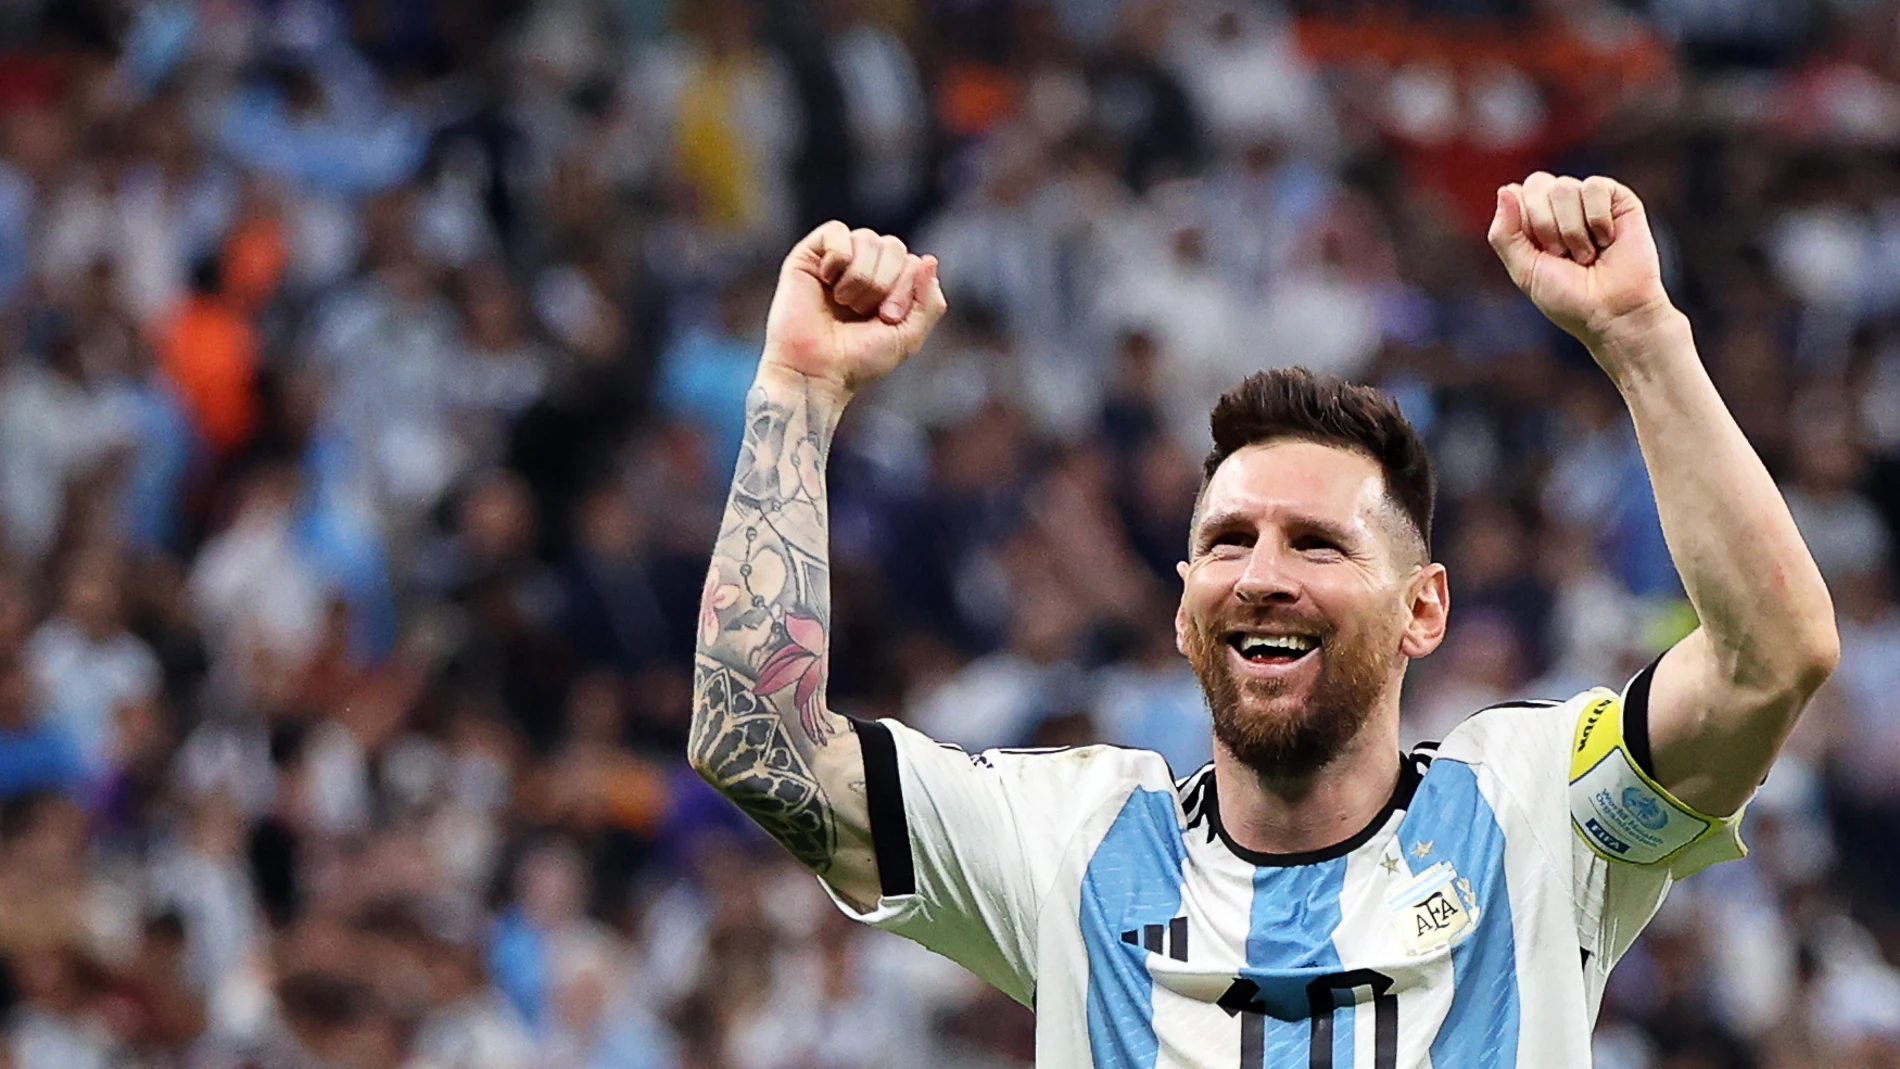 Leo Messi celebra un gol en el Mundial de Qatar 2022.